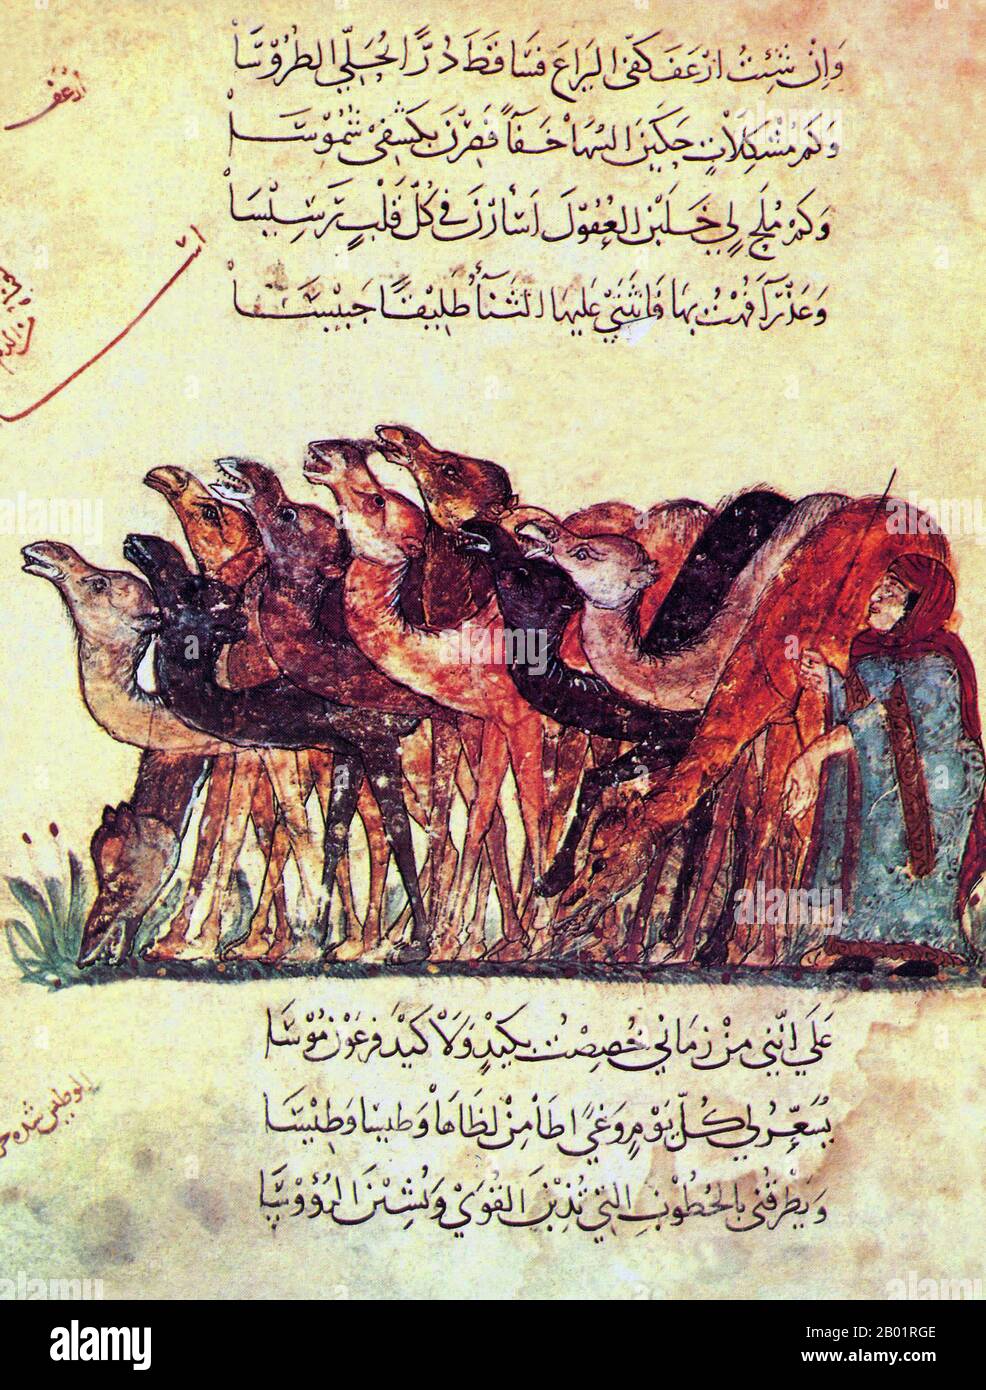 Iraq: Un pastore di cammelli con le sue accuse. Pittura in miniatura di Yahya ibn Mahmud al-Wasiti, 1237 d.C. Yahyâ ibn Mahmûd al-Wâsitî è stato un artista arabo islamico del XIII secolo. Al-Wasiti è nato a Wasit, nel sud dell'Iraq. Era noto per le sue illustrazioni del Maqam di al-Hariri. I Maqāma (letteralmente "assemblee") sono un genere letterario arabo (originariamente) di prosa rimata con intervalli di poesia in cui la stravaganza retorica è evidente. Si dice che l'autore del X secolo Badī' al-Zaman al-Hamadhāni abbia inventato la forma, che fu estesa da al-Hariri di Bassora nel secolo successivo. Foto Stock